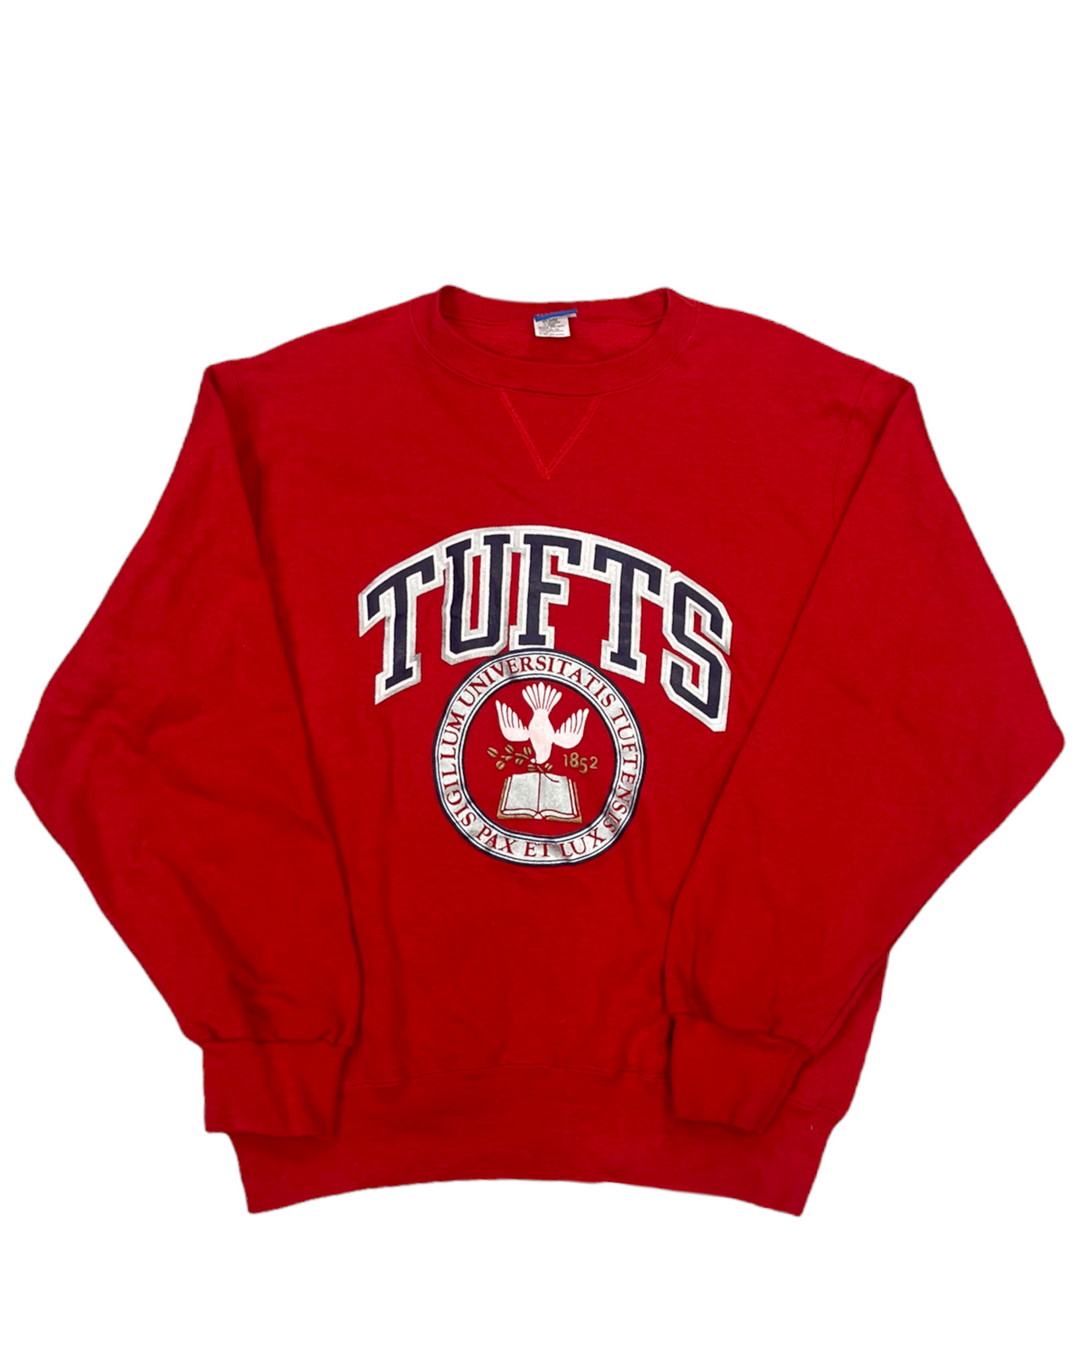 Tufts Vintage Sweatshirt